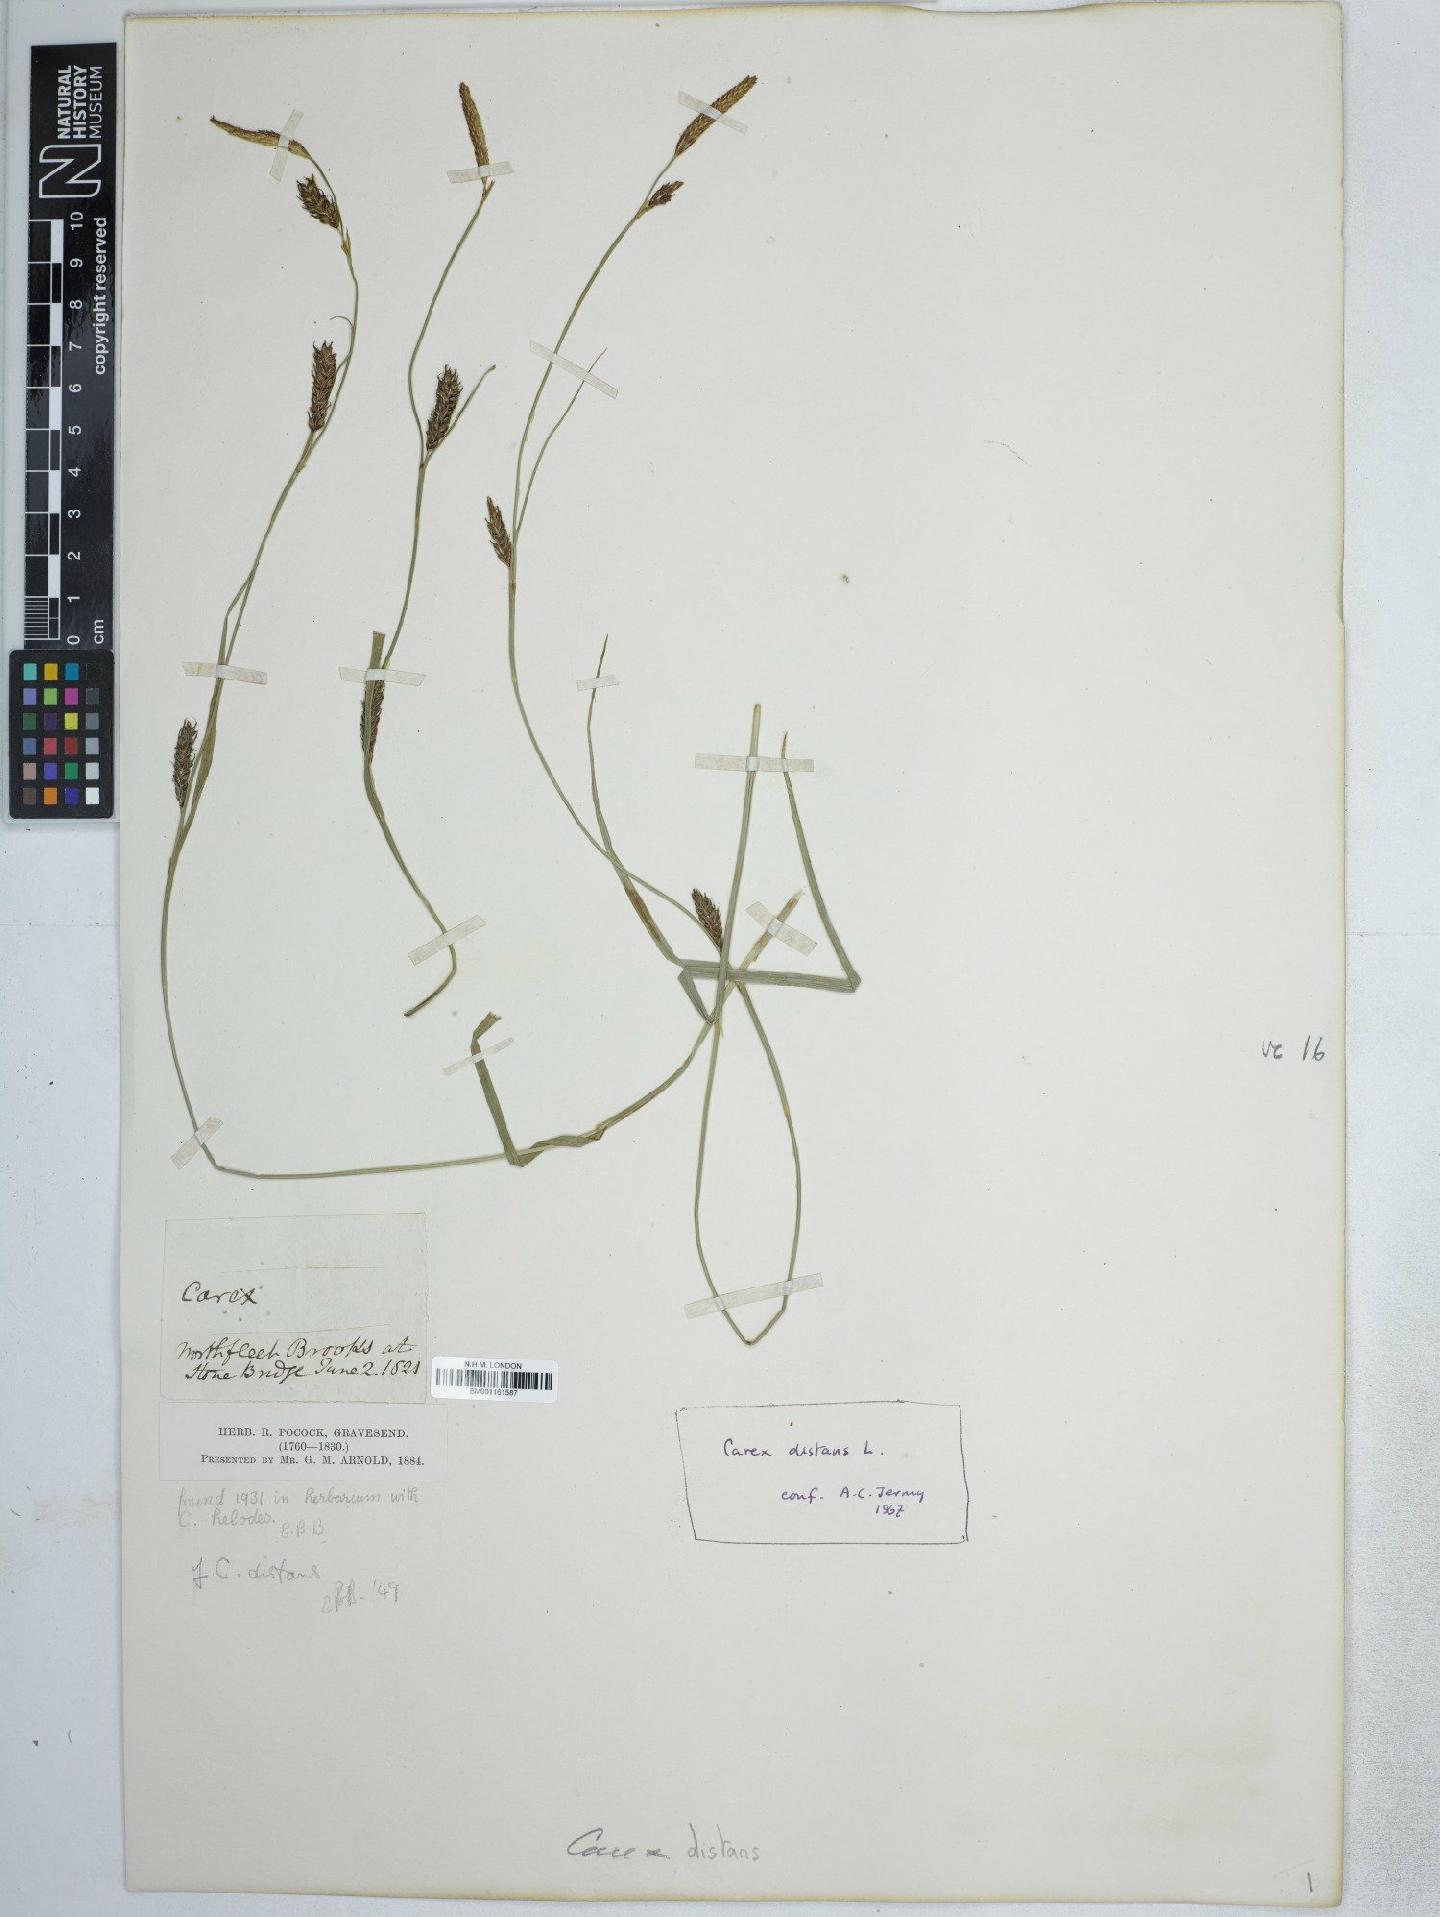 To NHMUK collection (Carex distans L.; NHMUK:ecatalogue:5016193)